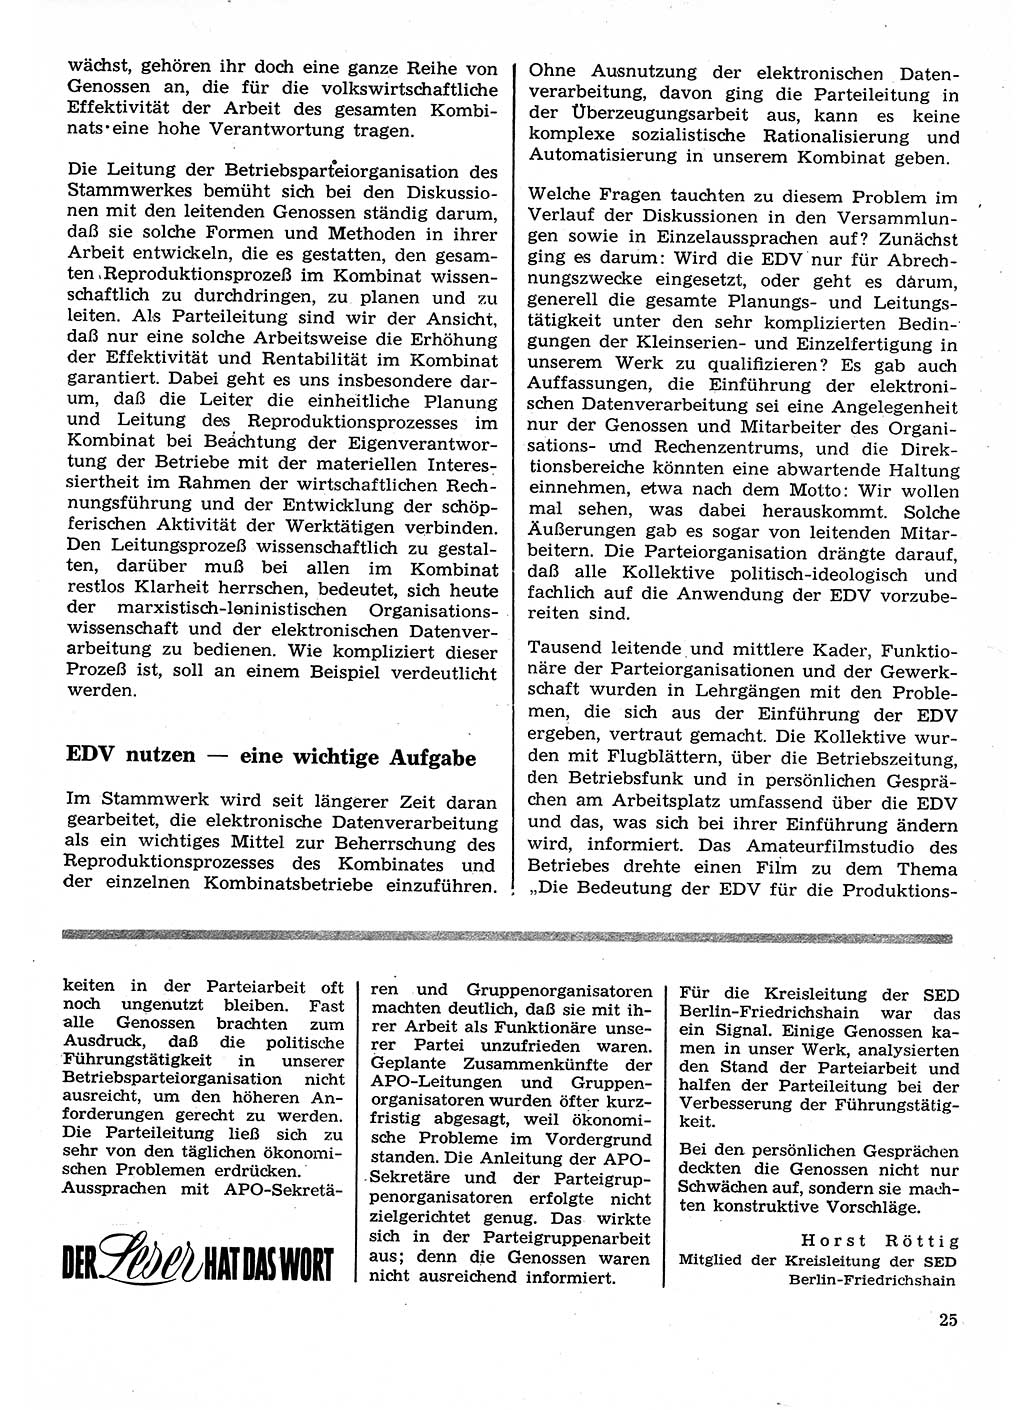 Neuer Weg (NW), Organ des Zentralkomitees (ZK) der SED (Sozialistische Einheitspartei Deutschlands) für Fragen des Parteilebens, 26. Jahrgang [Deutsche Demokratische Republik (DDR)] 1971, Seite 25 (NW ZK SED DDR 1971, S. 25)